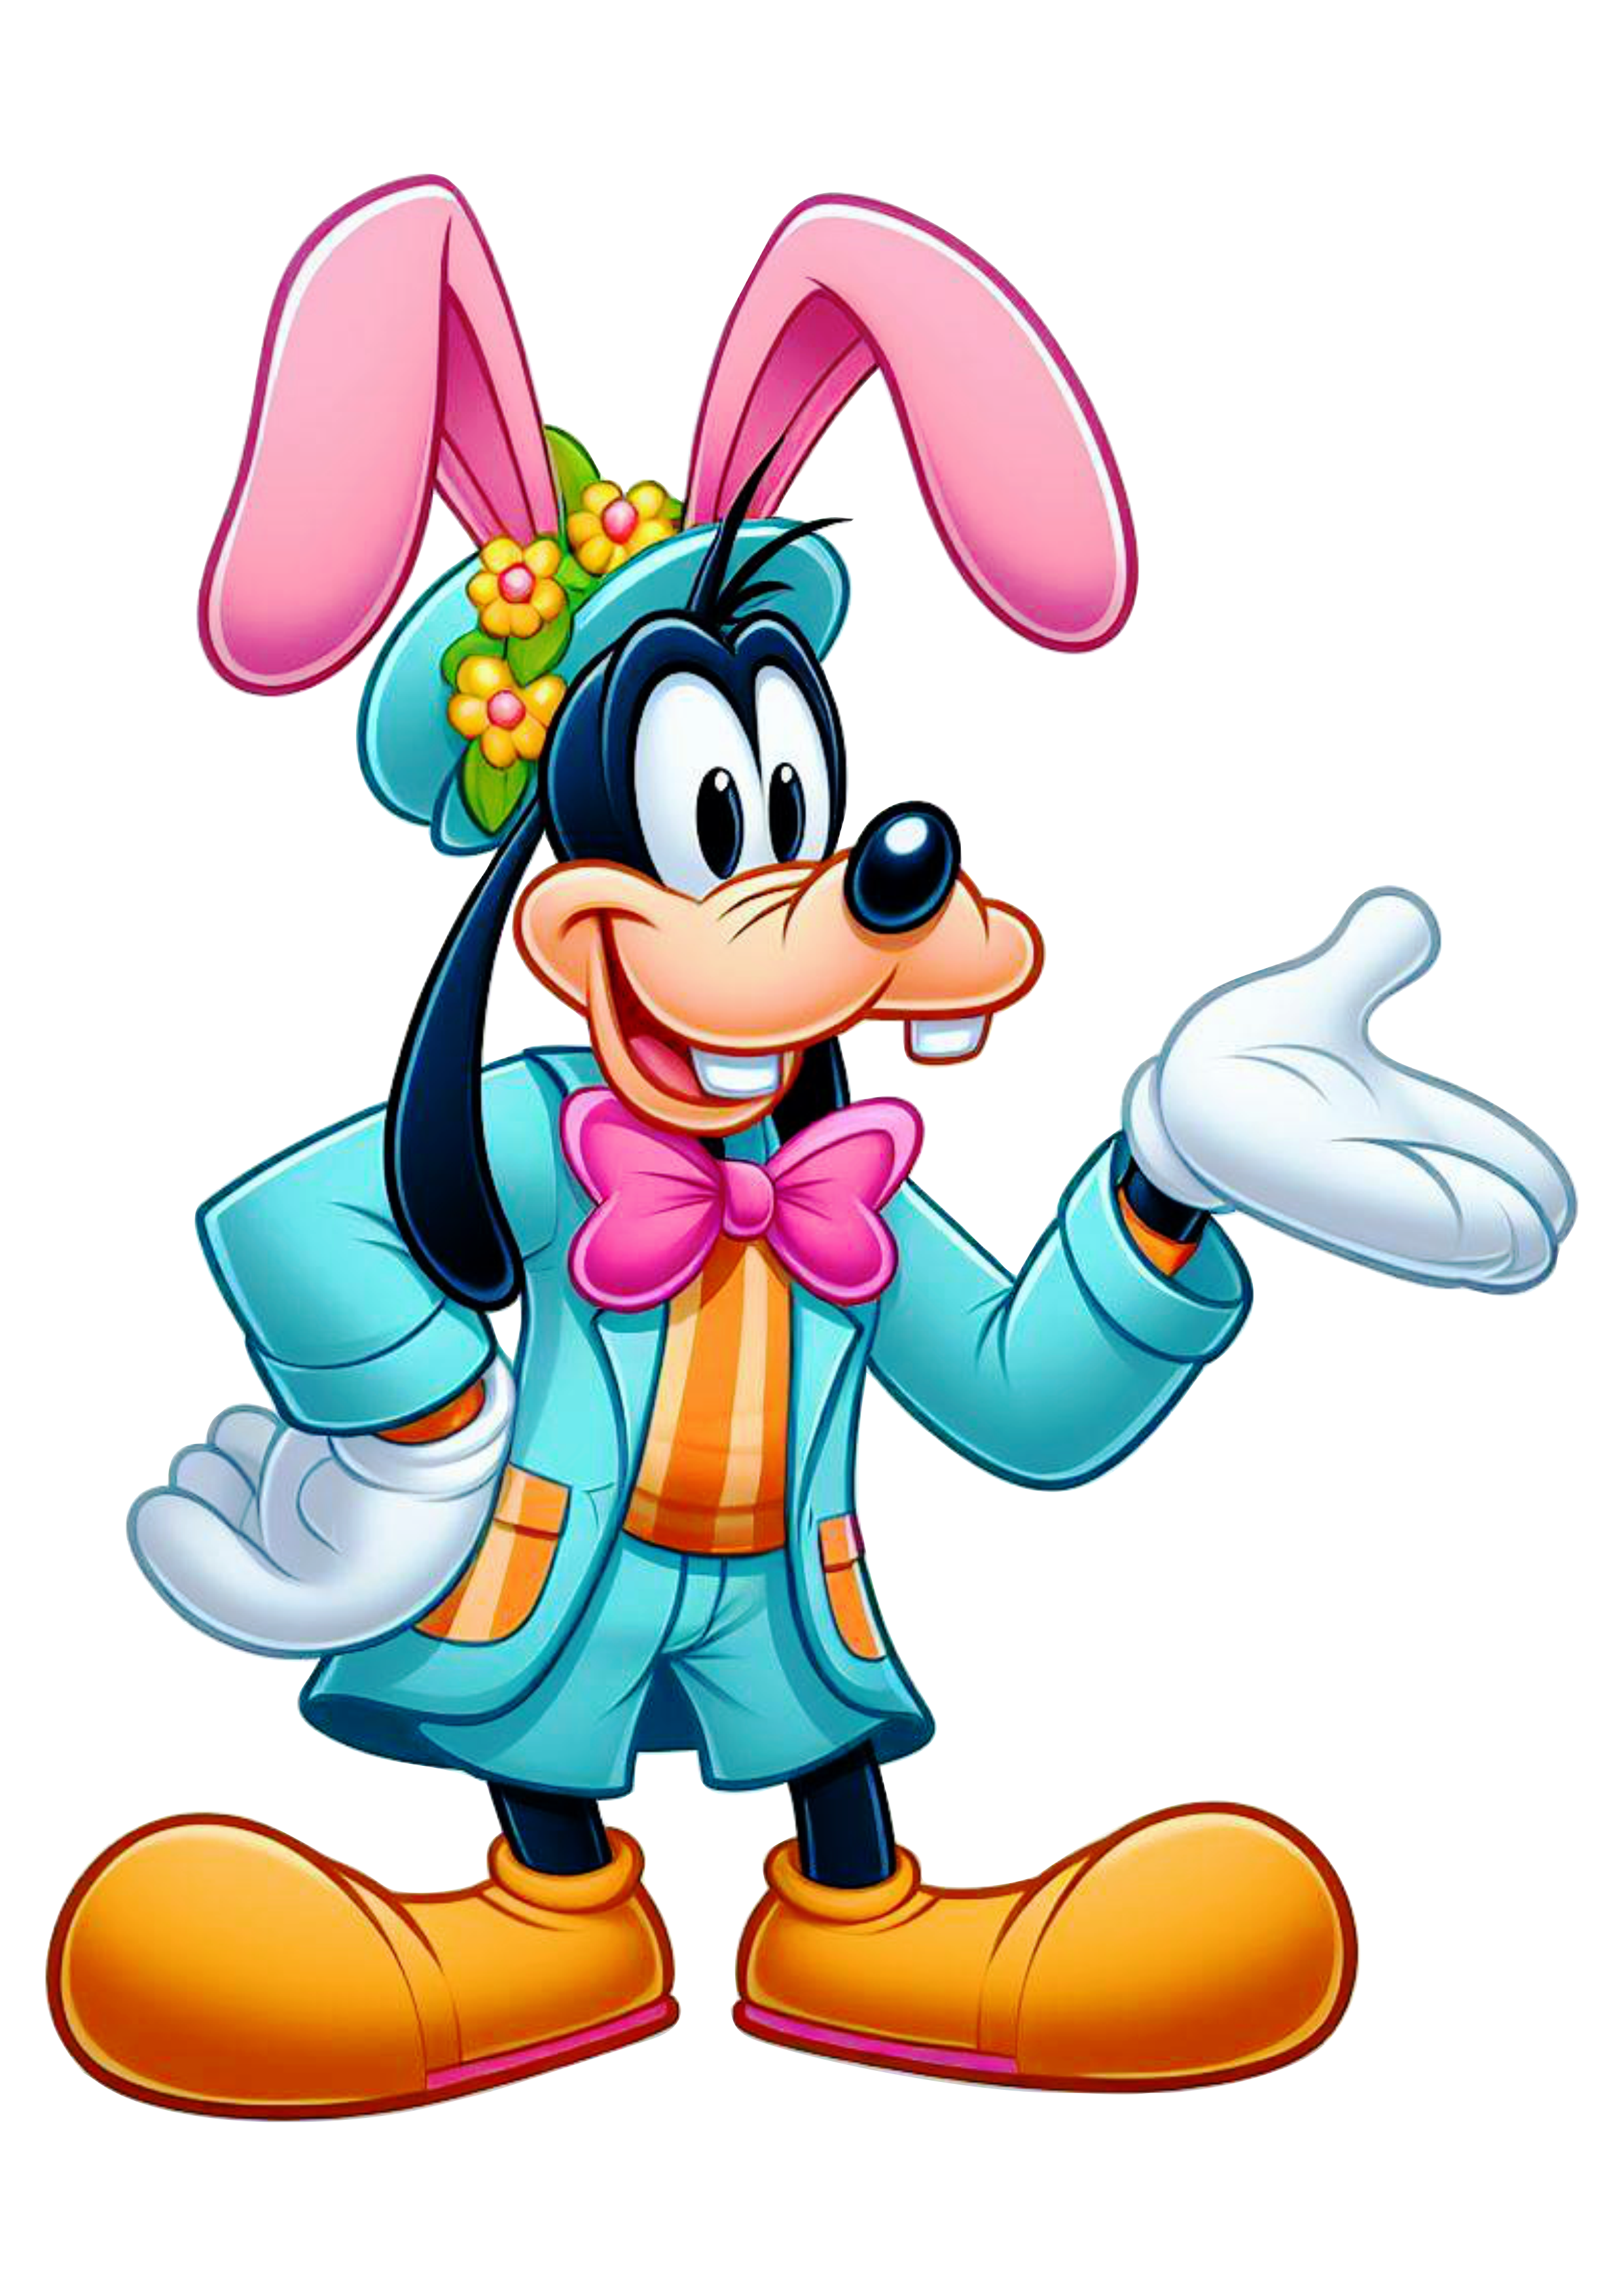 Imagens Disney Pateta coelhinho da páscoa Turma do Mickey Mouse clipart vetor desenho infantil ilustração de cor azul com rosa png